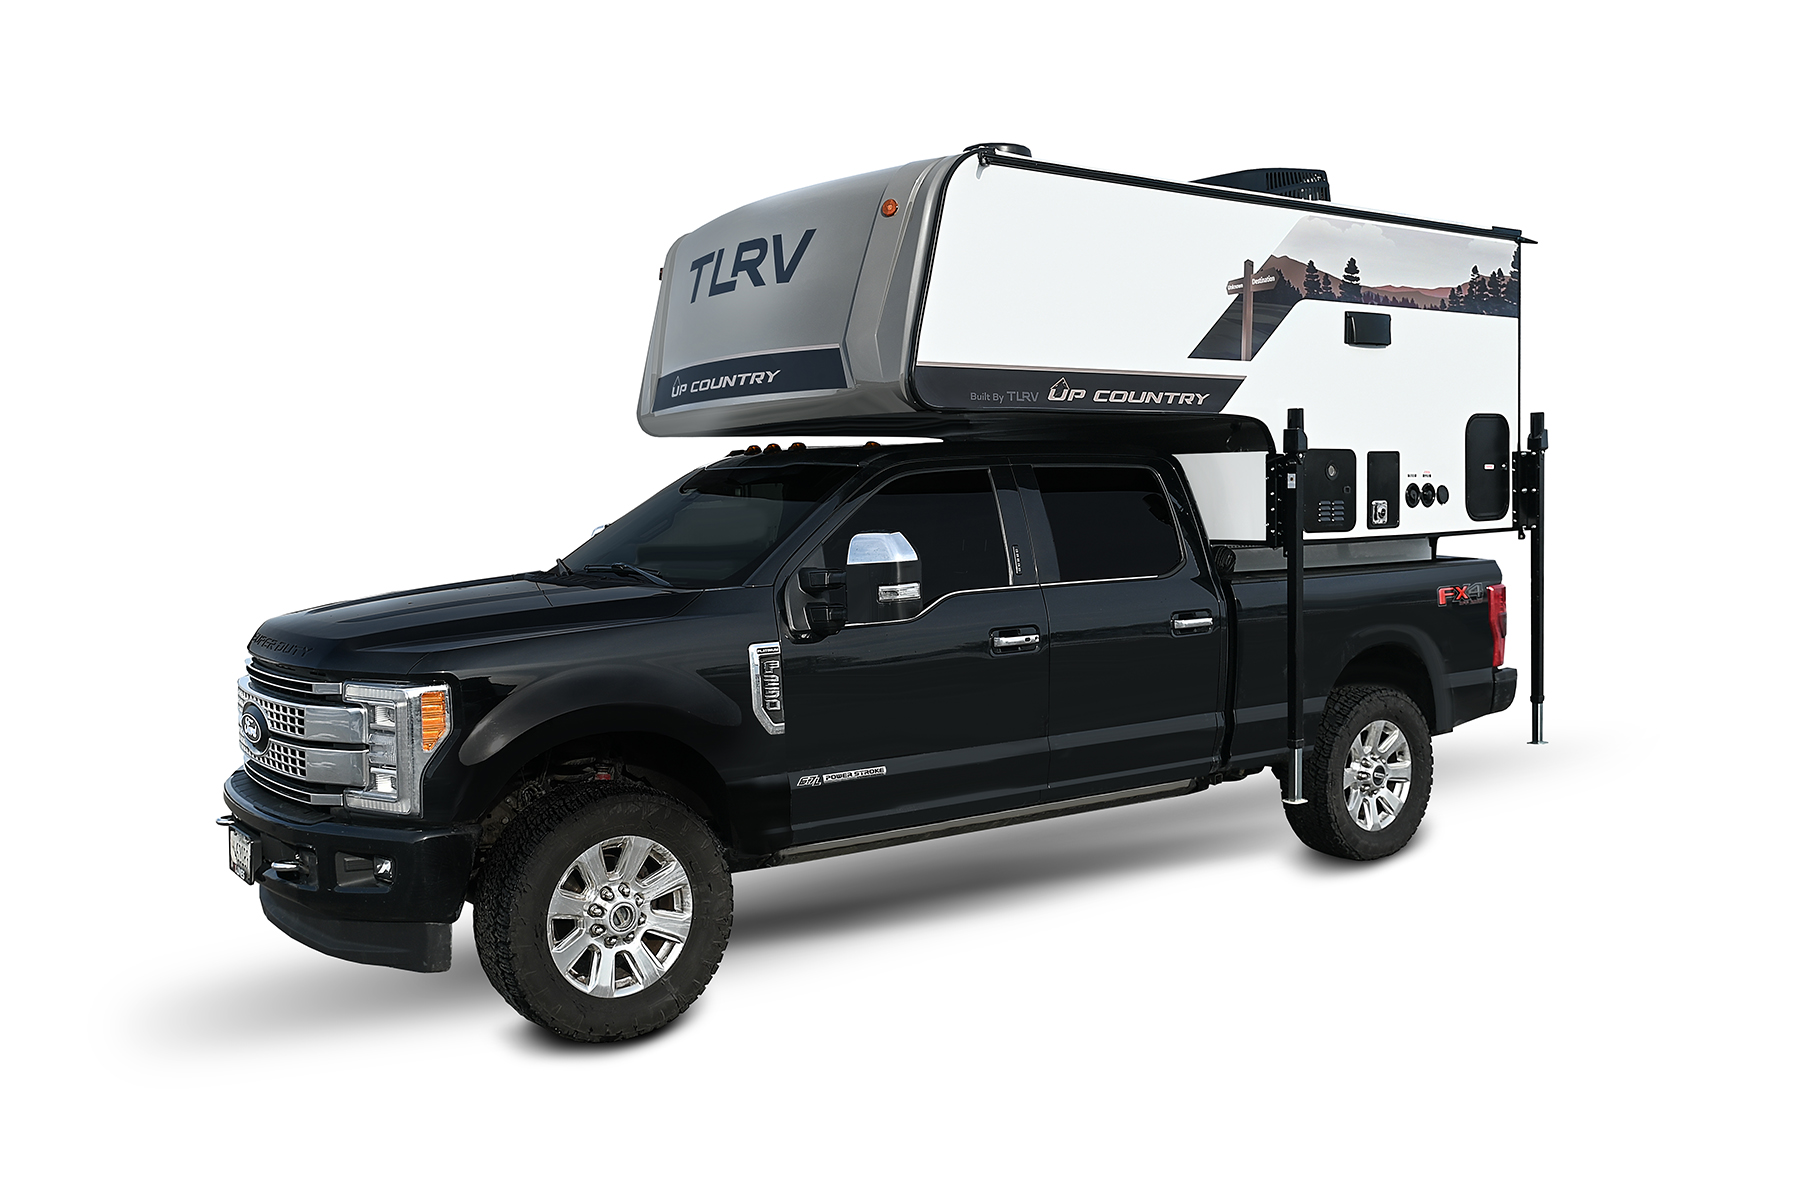 travel lite truck bed camper models